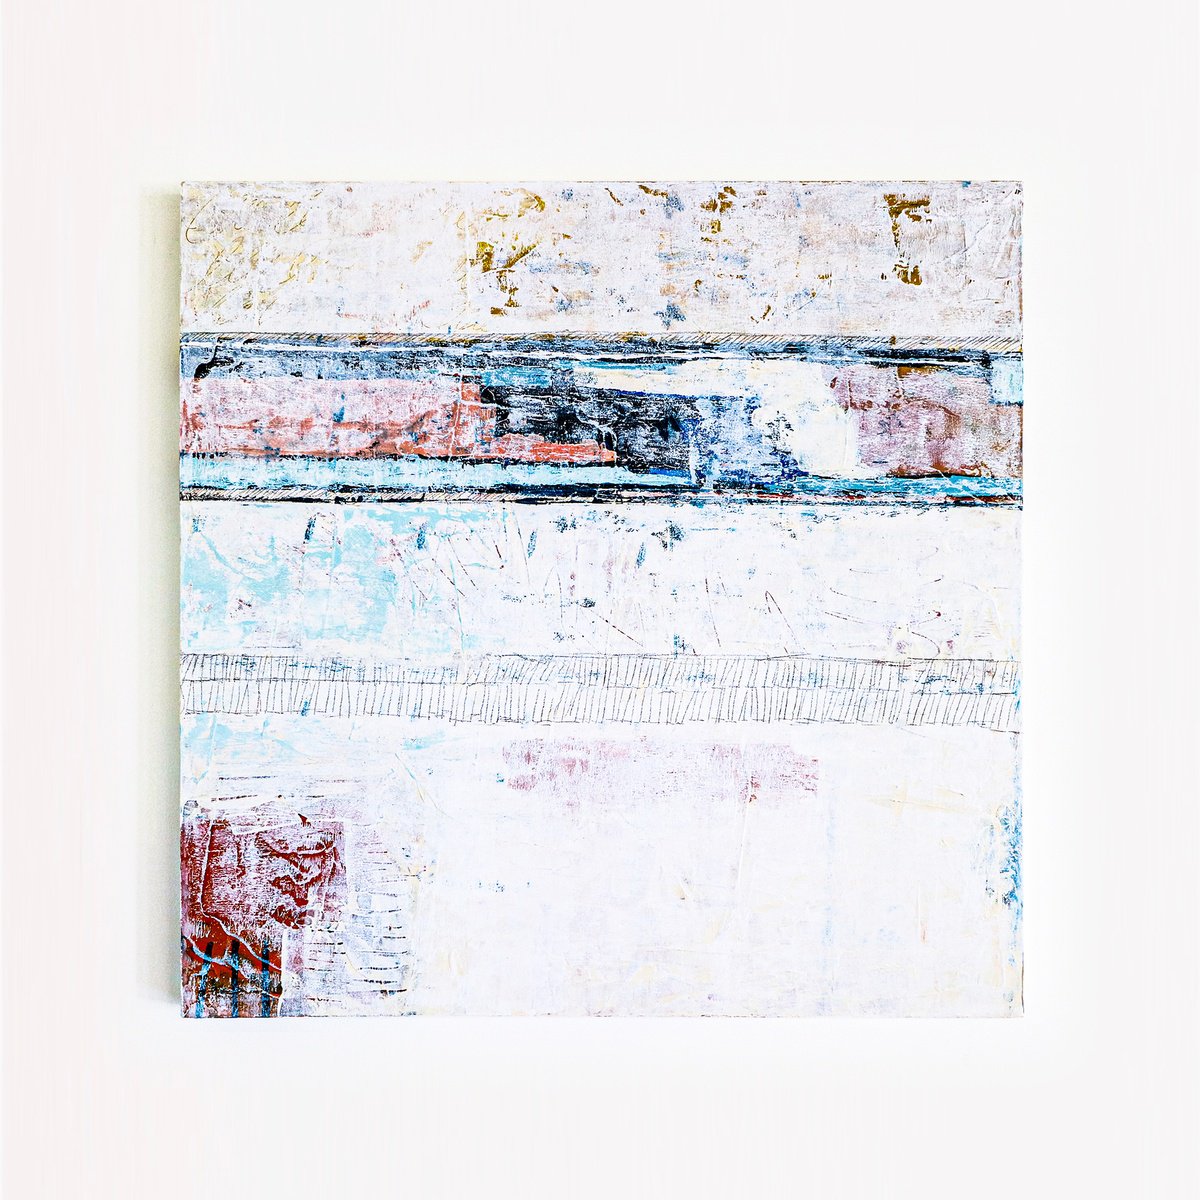 Memoriae (30x30 | 76x76 cm) by Hyunah Kim